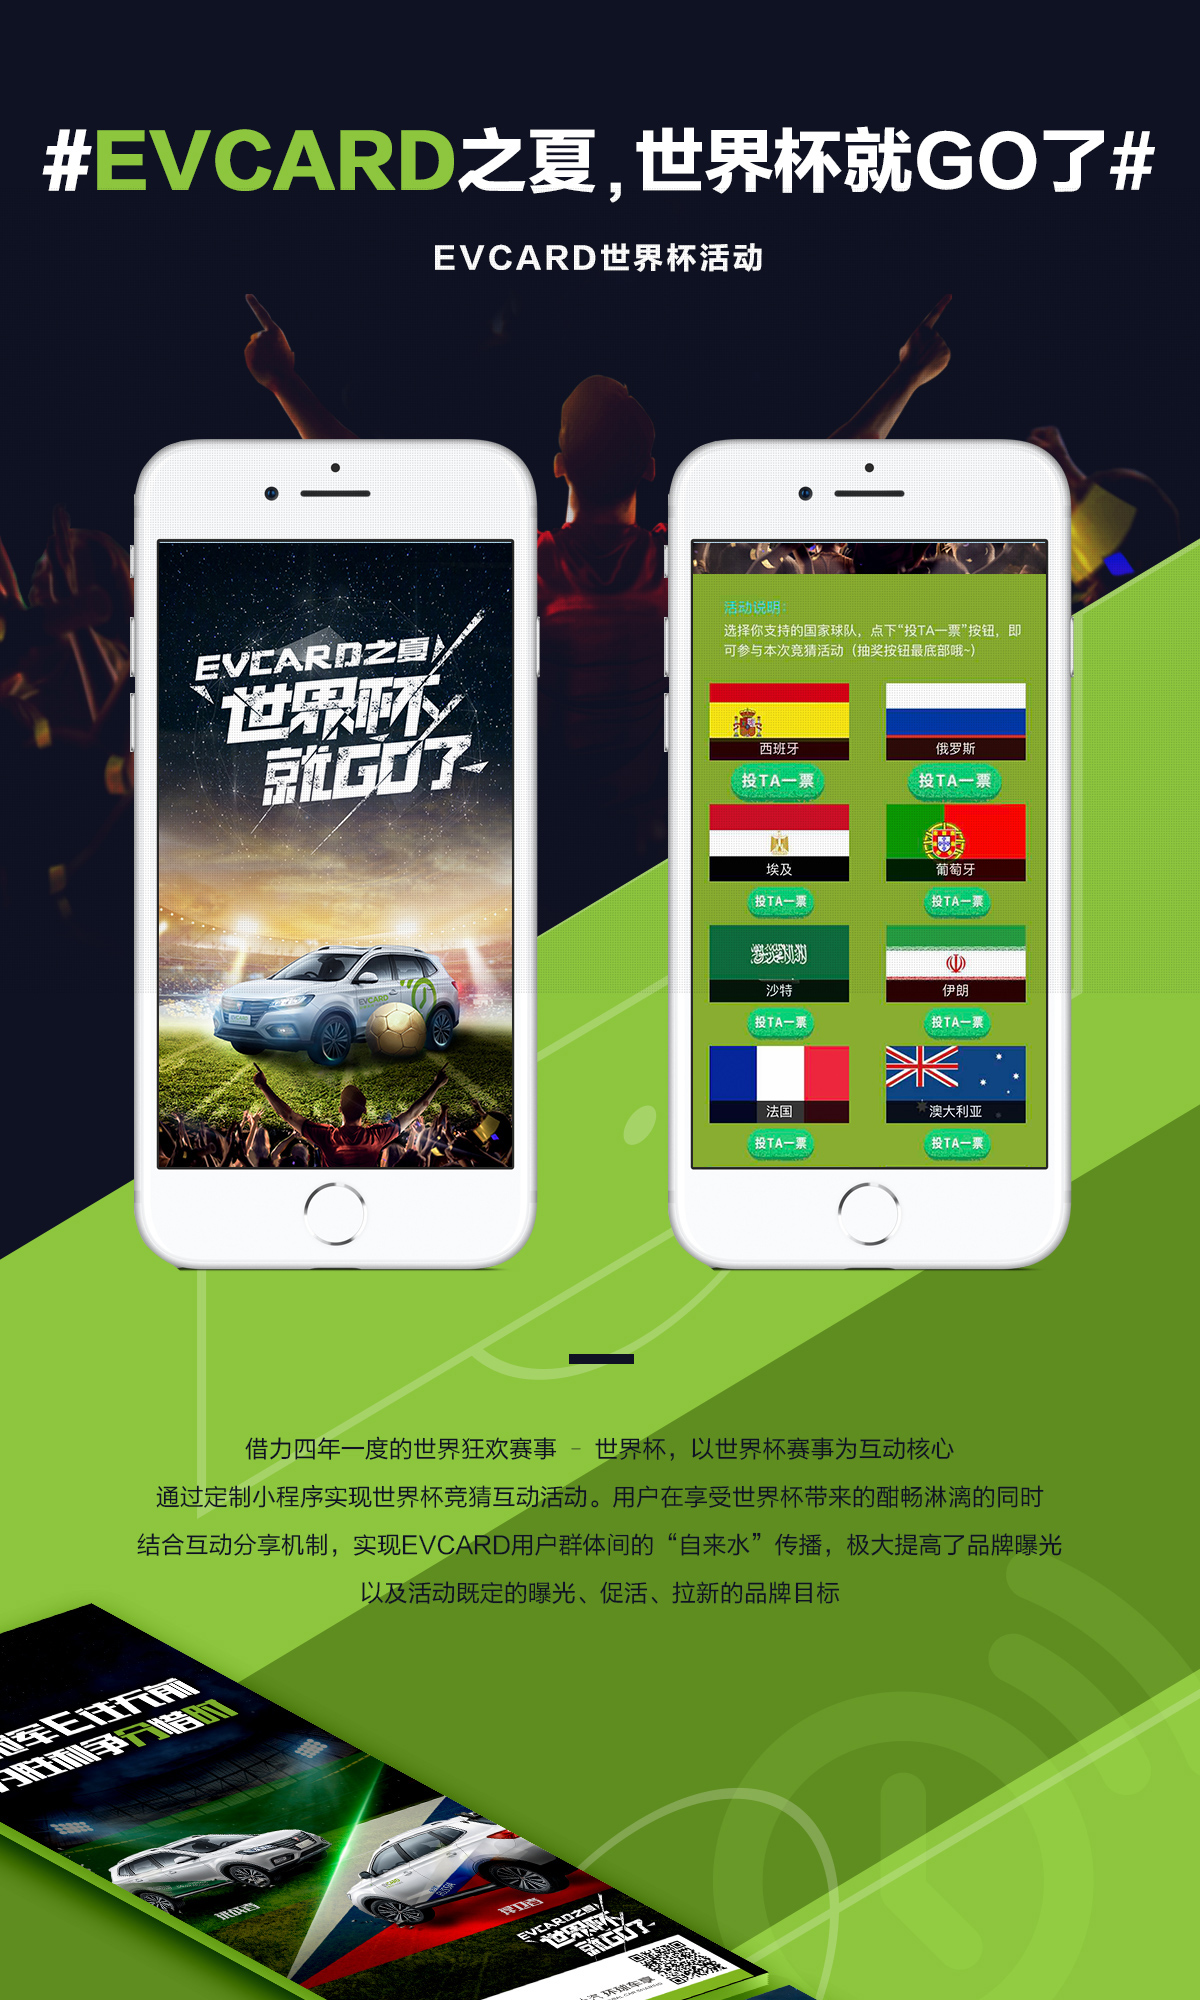 #EVCARD之夏，世界杯就GO了#-新媒体营销,新媒体广告公司,上海网络营销,微信代运营,高端网站建设,网站建设公司